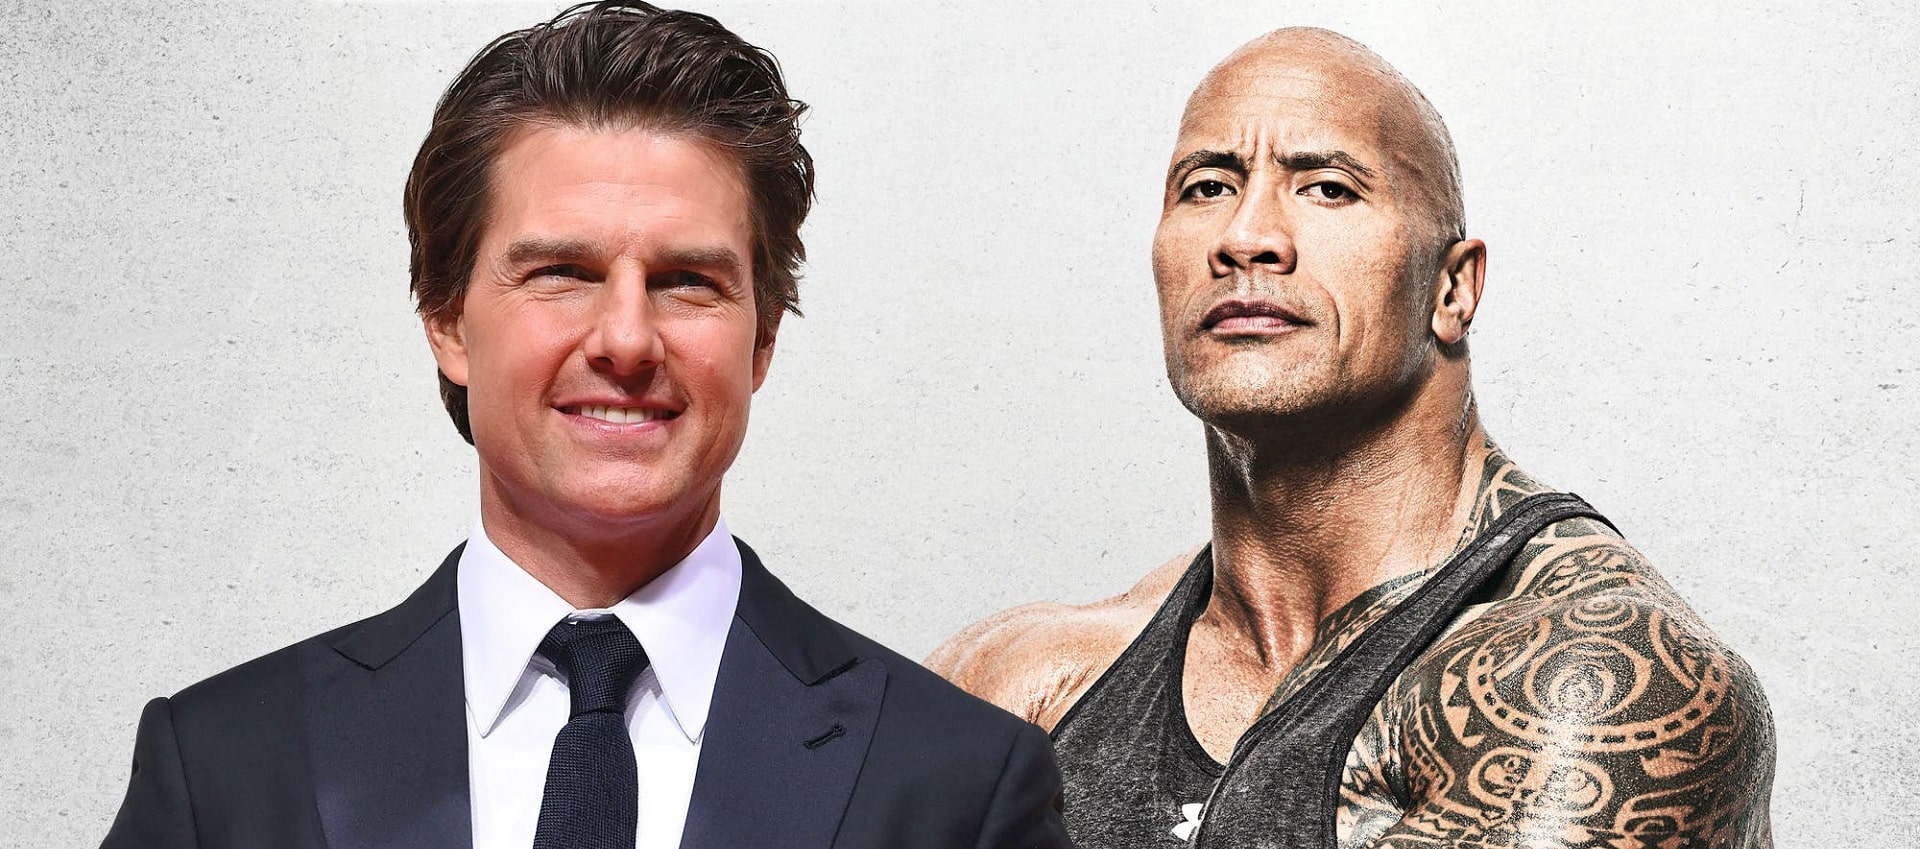 Tom Cruise e Dwayne Johnson hanno espresso il desiderio di lavorare insieme